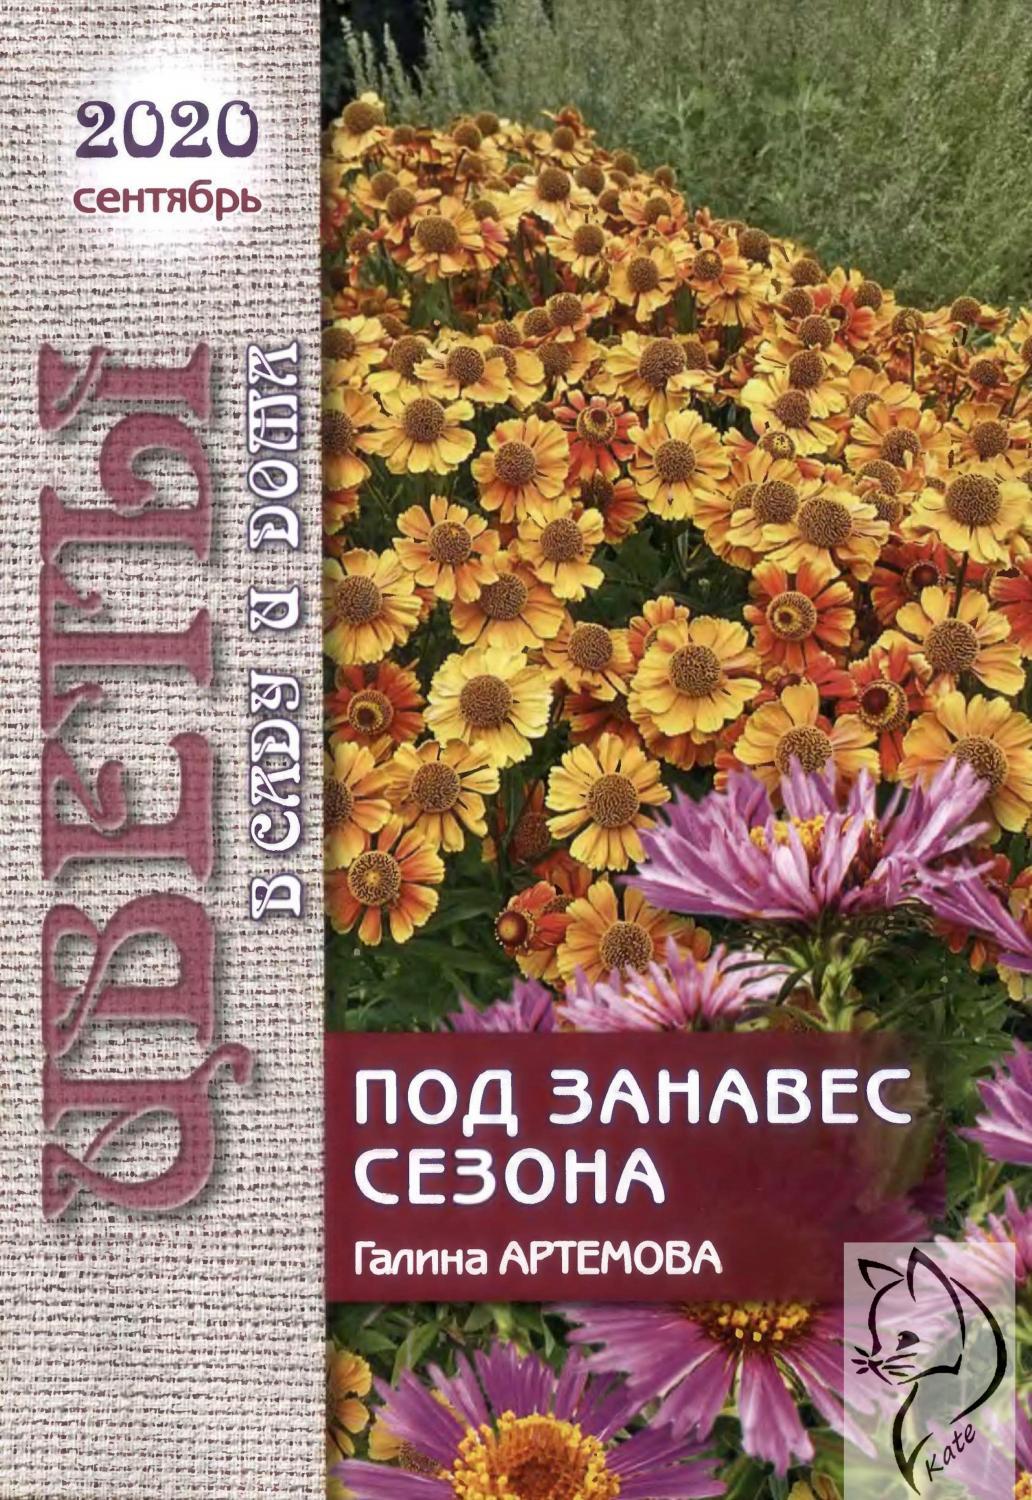 Цветы в саду и дома №9, сентябрь 2020